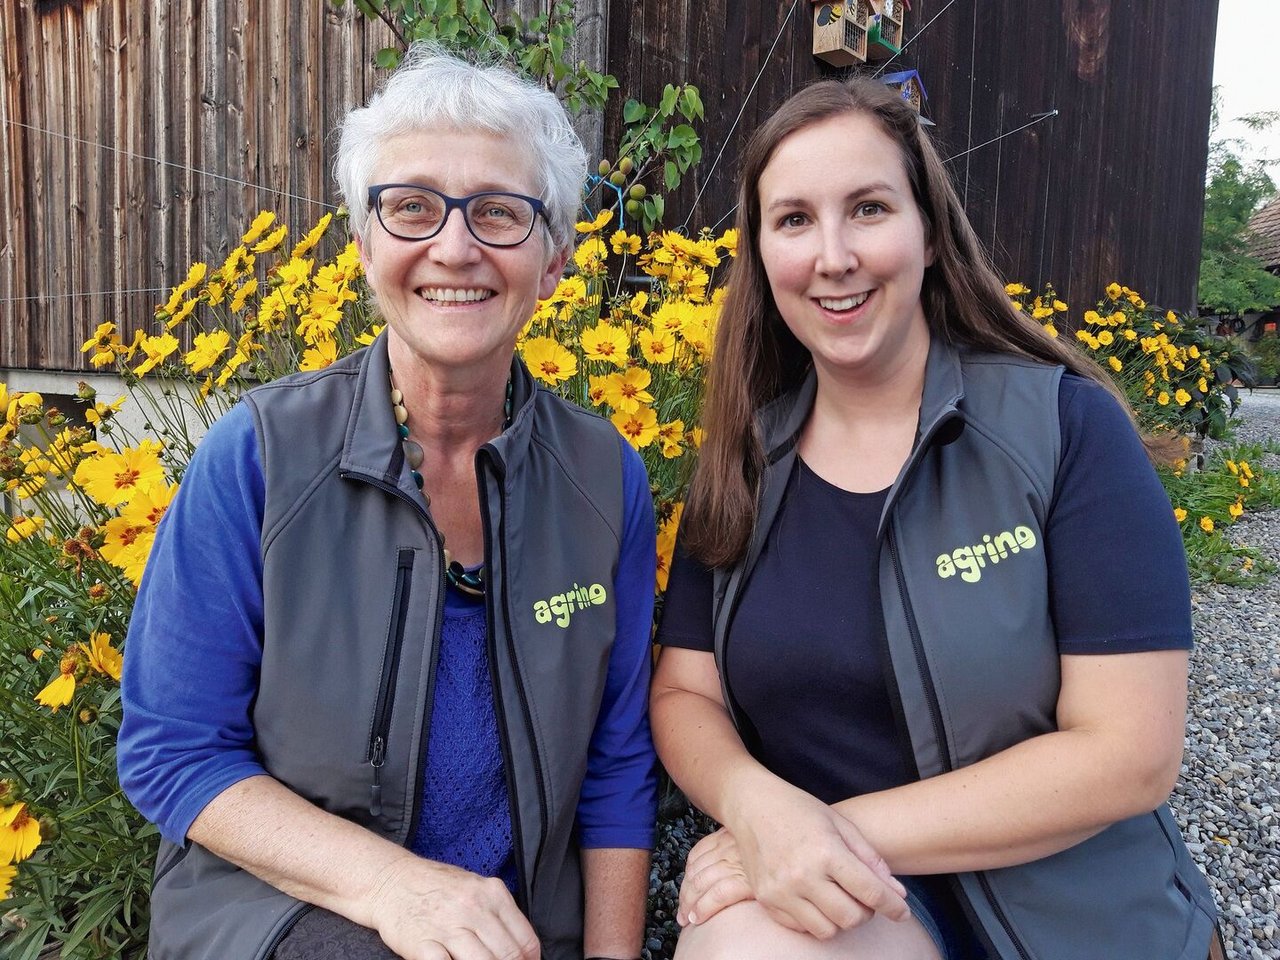 Vroni und Marcia Peterhans von der Betriebsgemeinschaft Agrino engagieren sich für ihren Berufsstand: Vroni Peterhans empfängt seit über 20 Jahren Klassen auf dem Hof, Marcia Peterhans ist seit 2019 Referentin bei Agro-Image. 